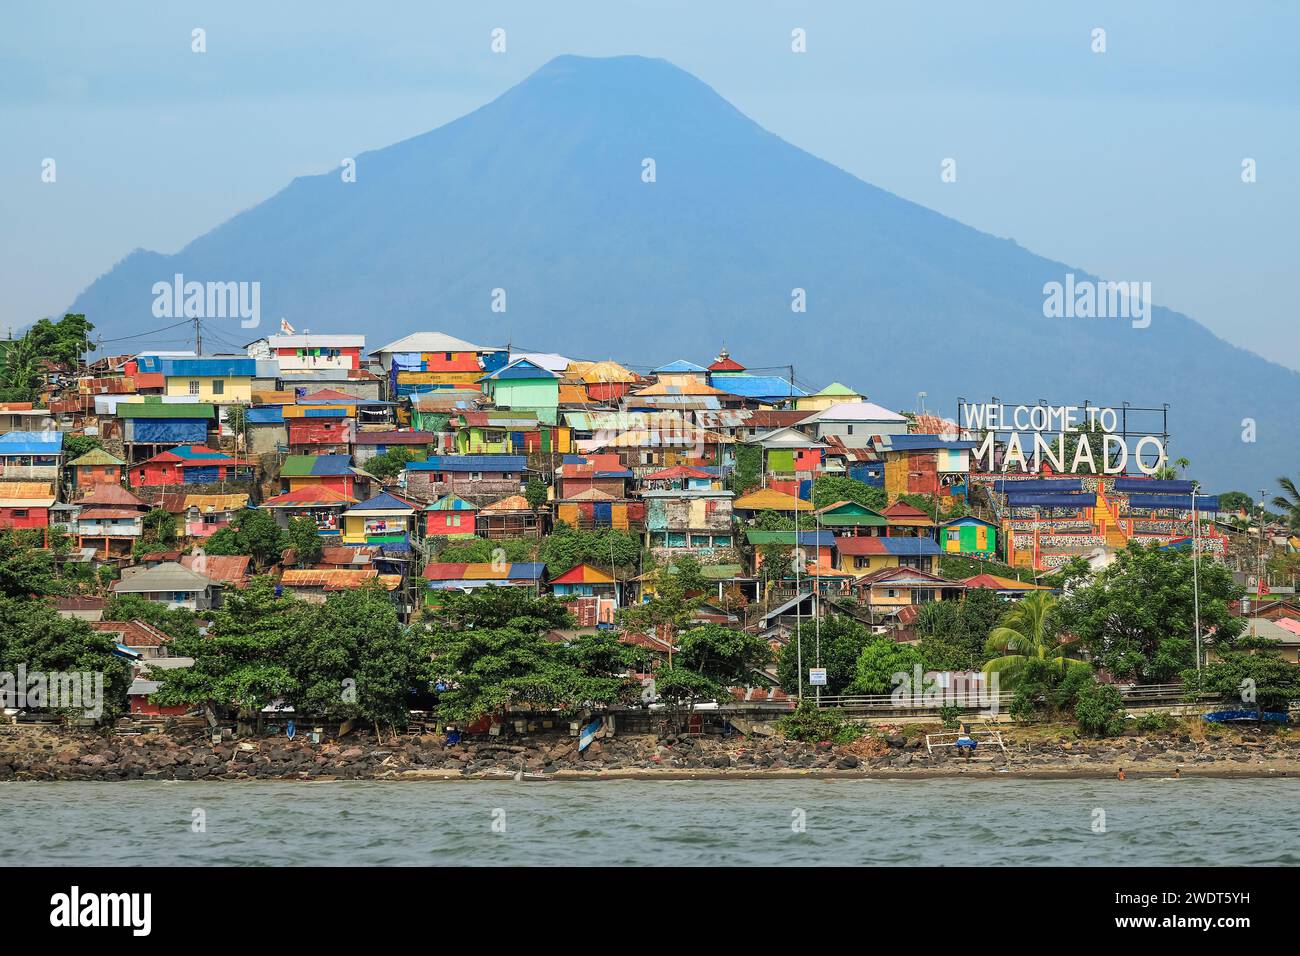 Willkommen bei Manado Schild am Hafeneingang der Provinzhauptstadt im Norden von Sulawesi, Manado, Nord-Sulawesi, Indonesien, Südostasien, Asien Stockfoto